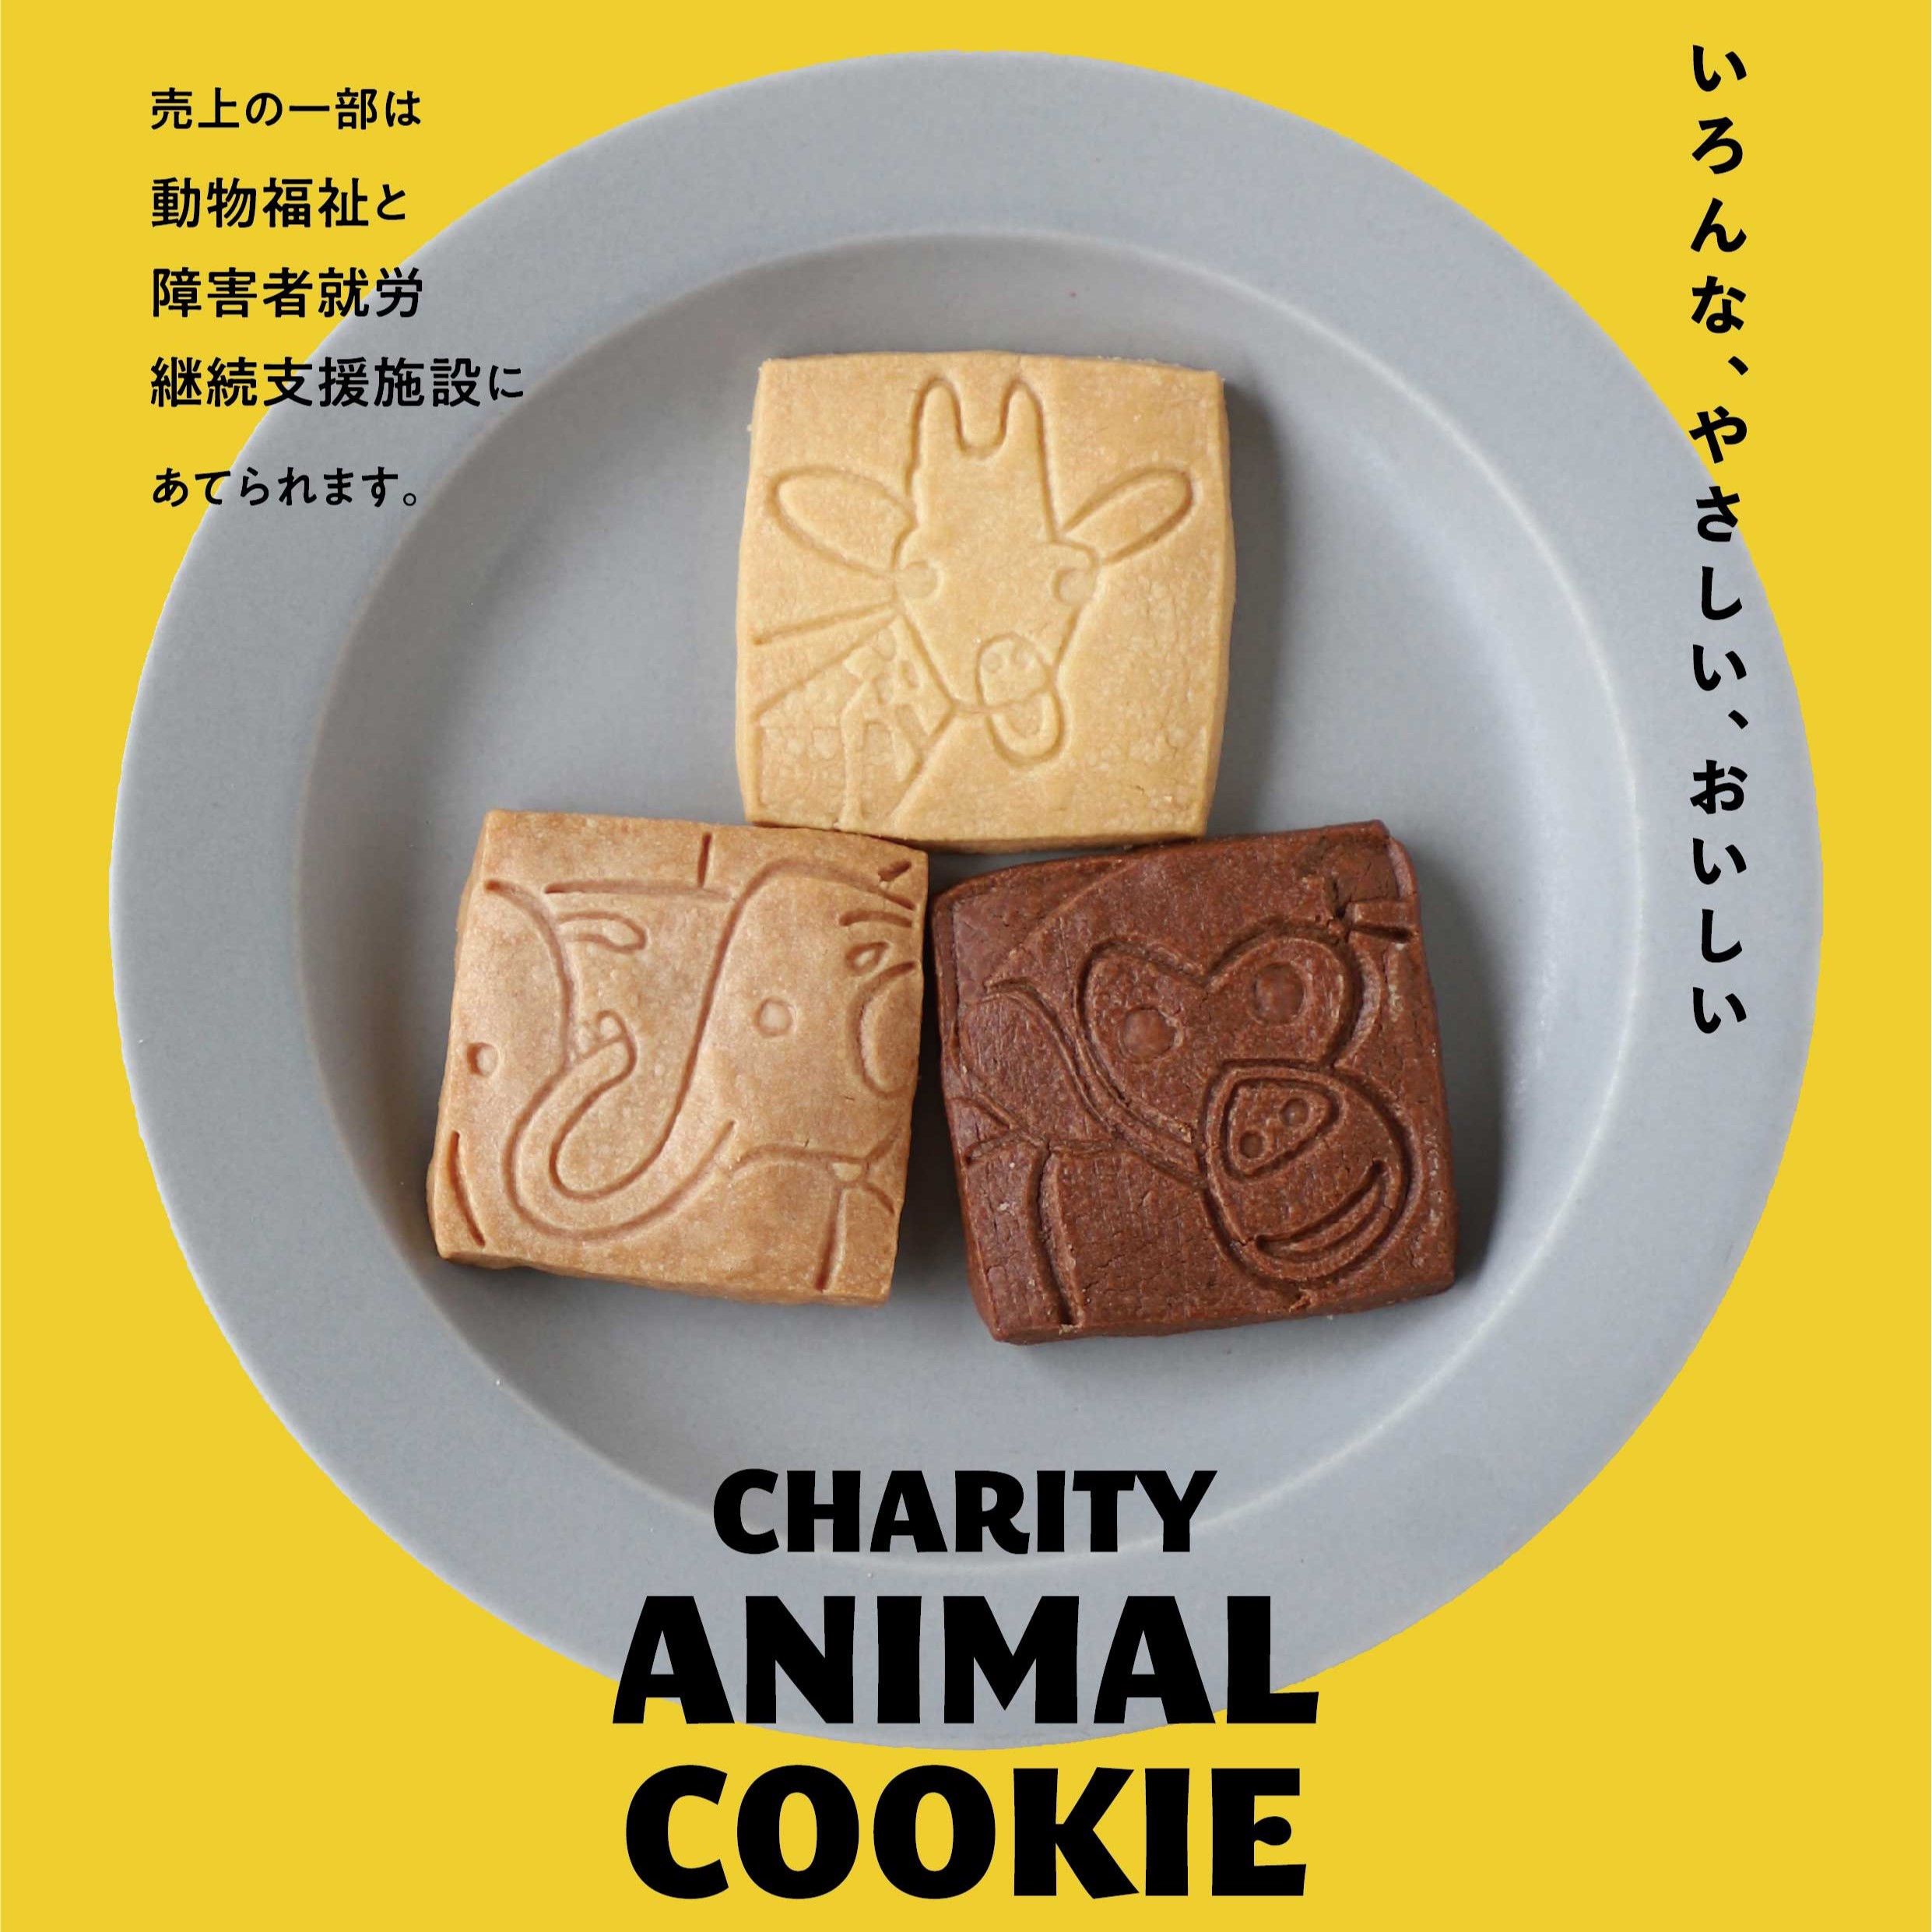 動物のエサの寄付と障害福祉を目指した「動物クッキー」を京都市動物園内にて販売します